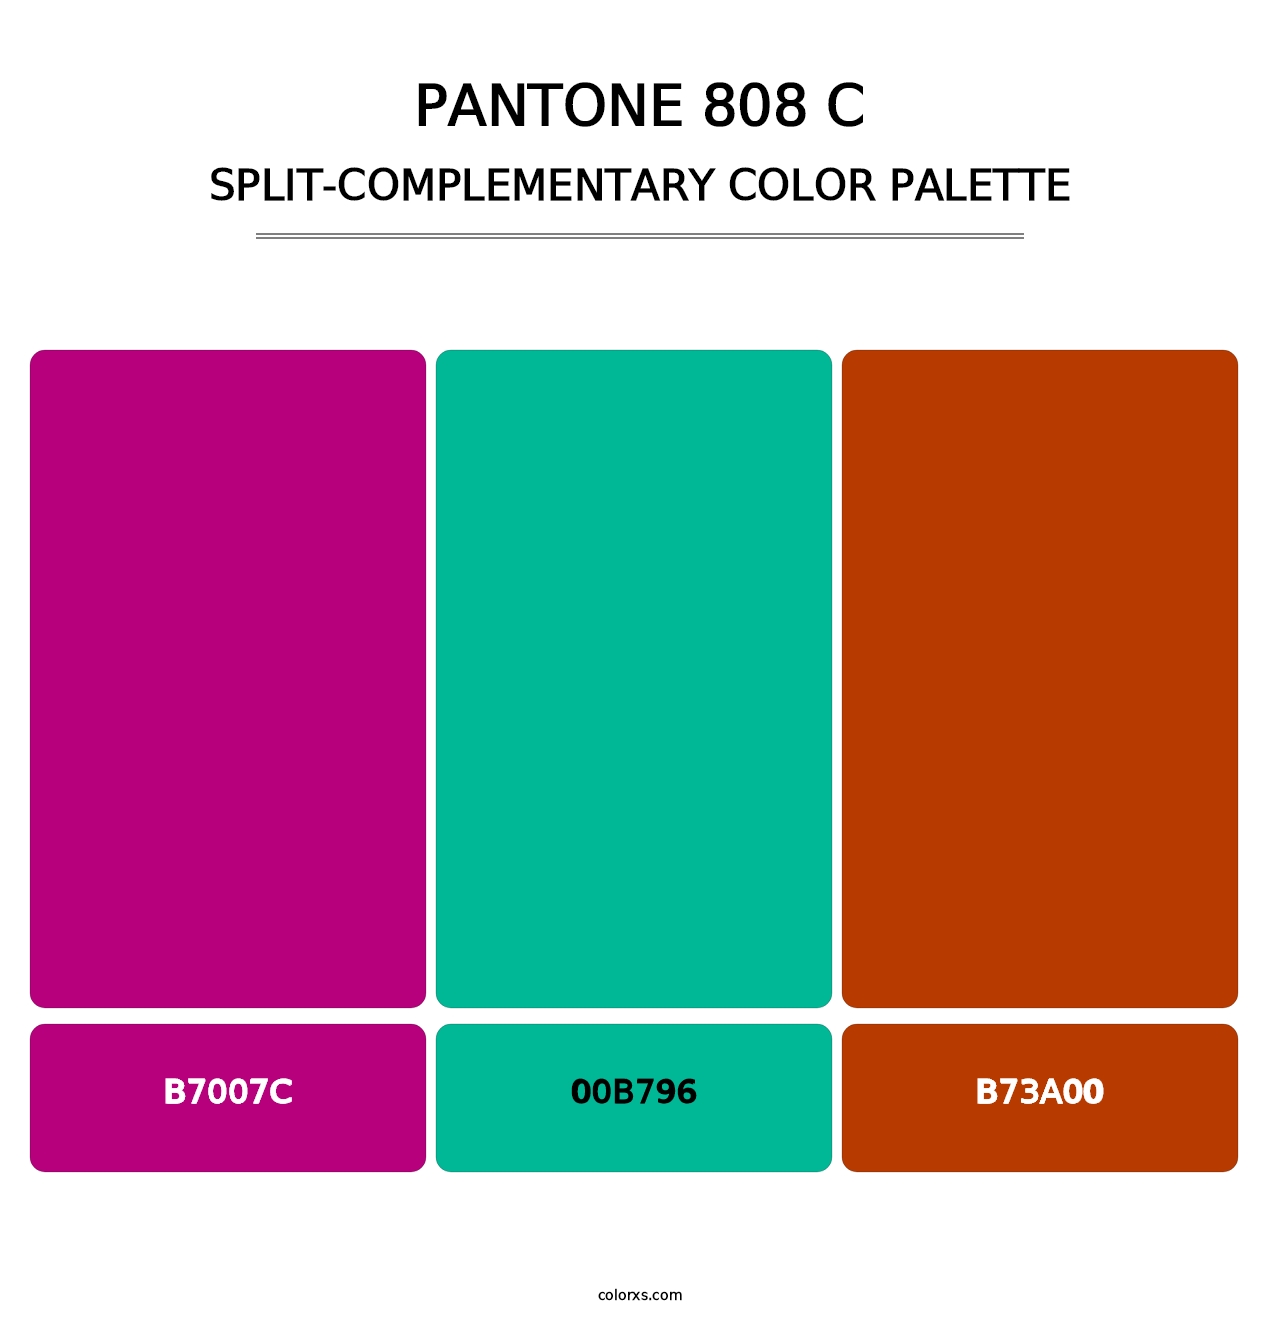 PANTONE 808 C - Split-Complementary Color Palette